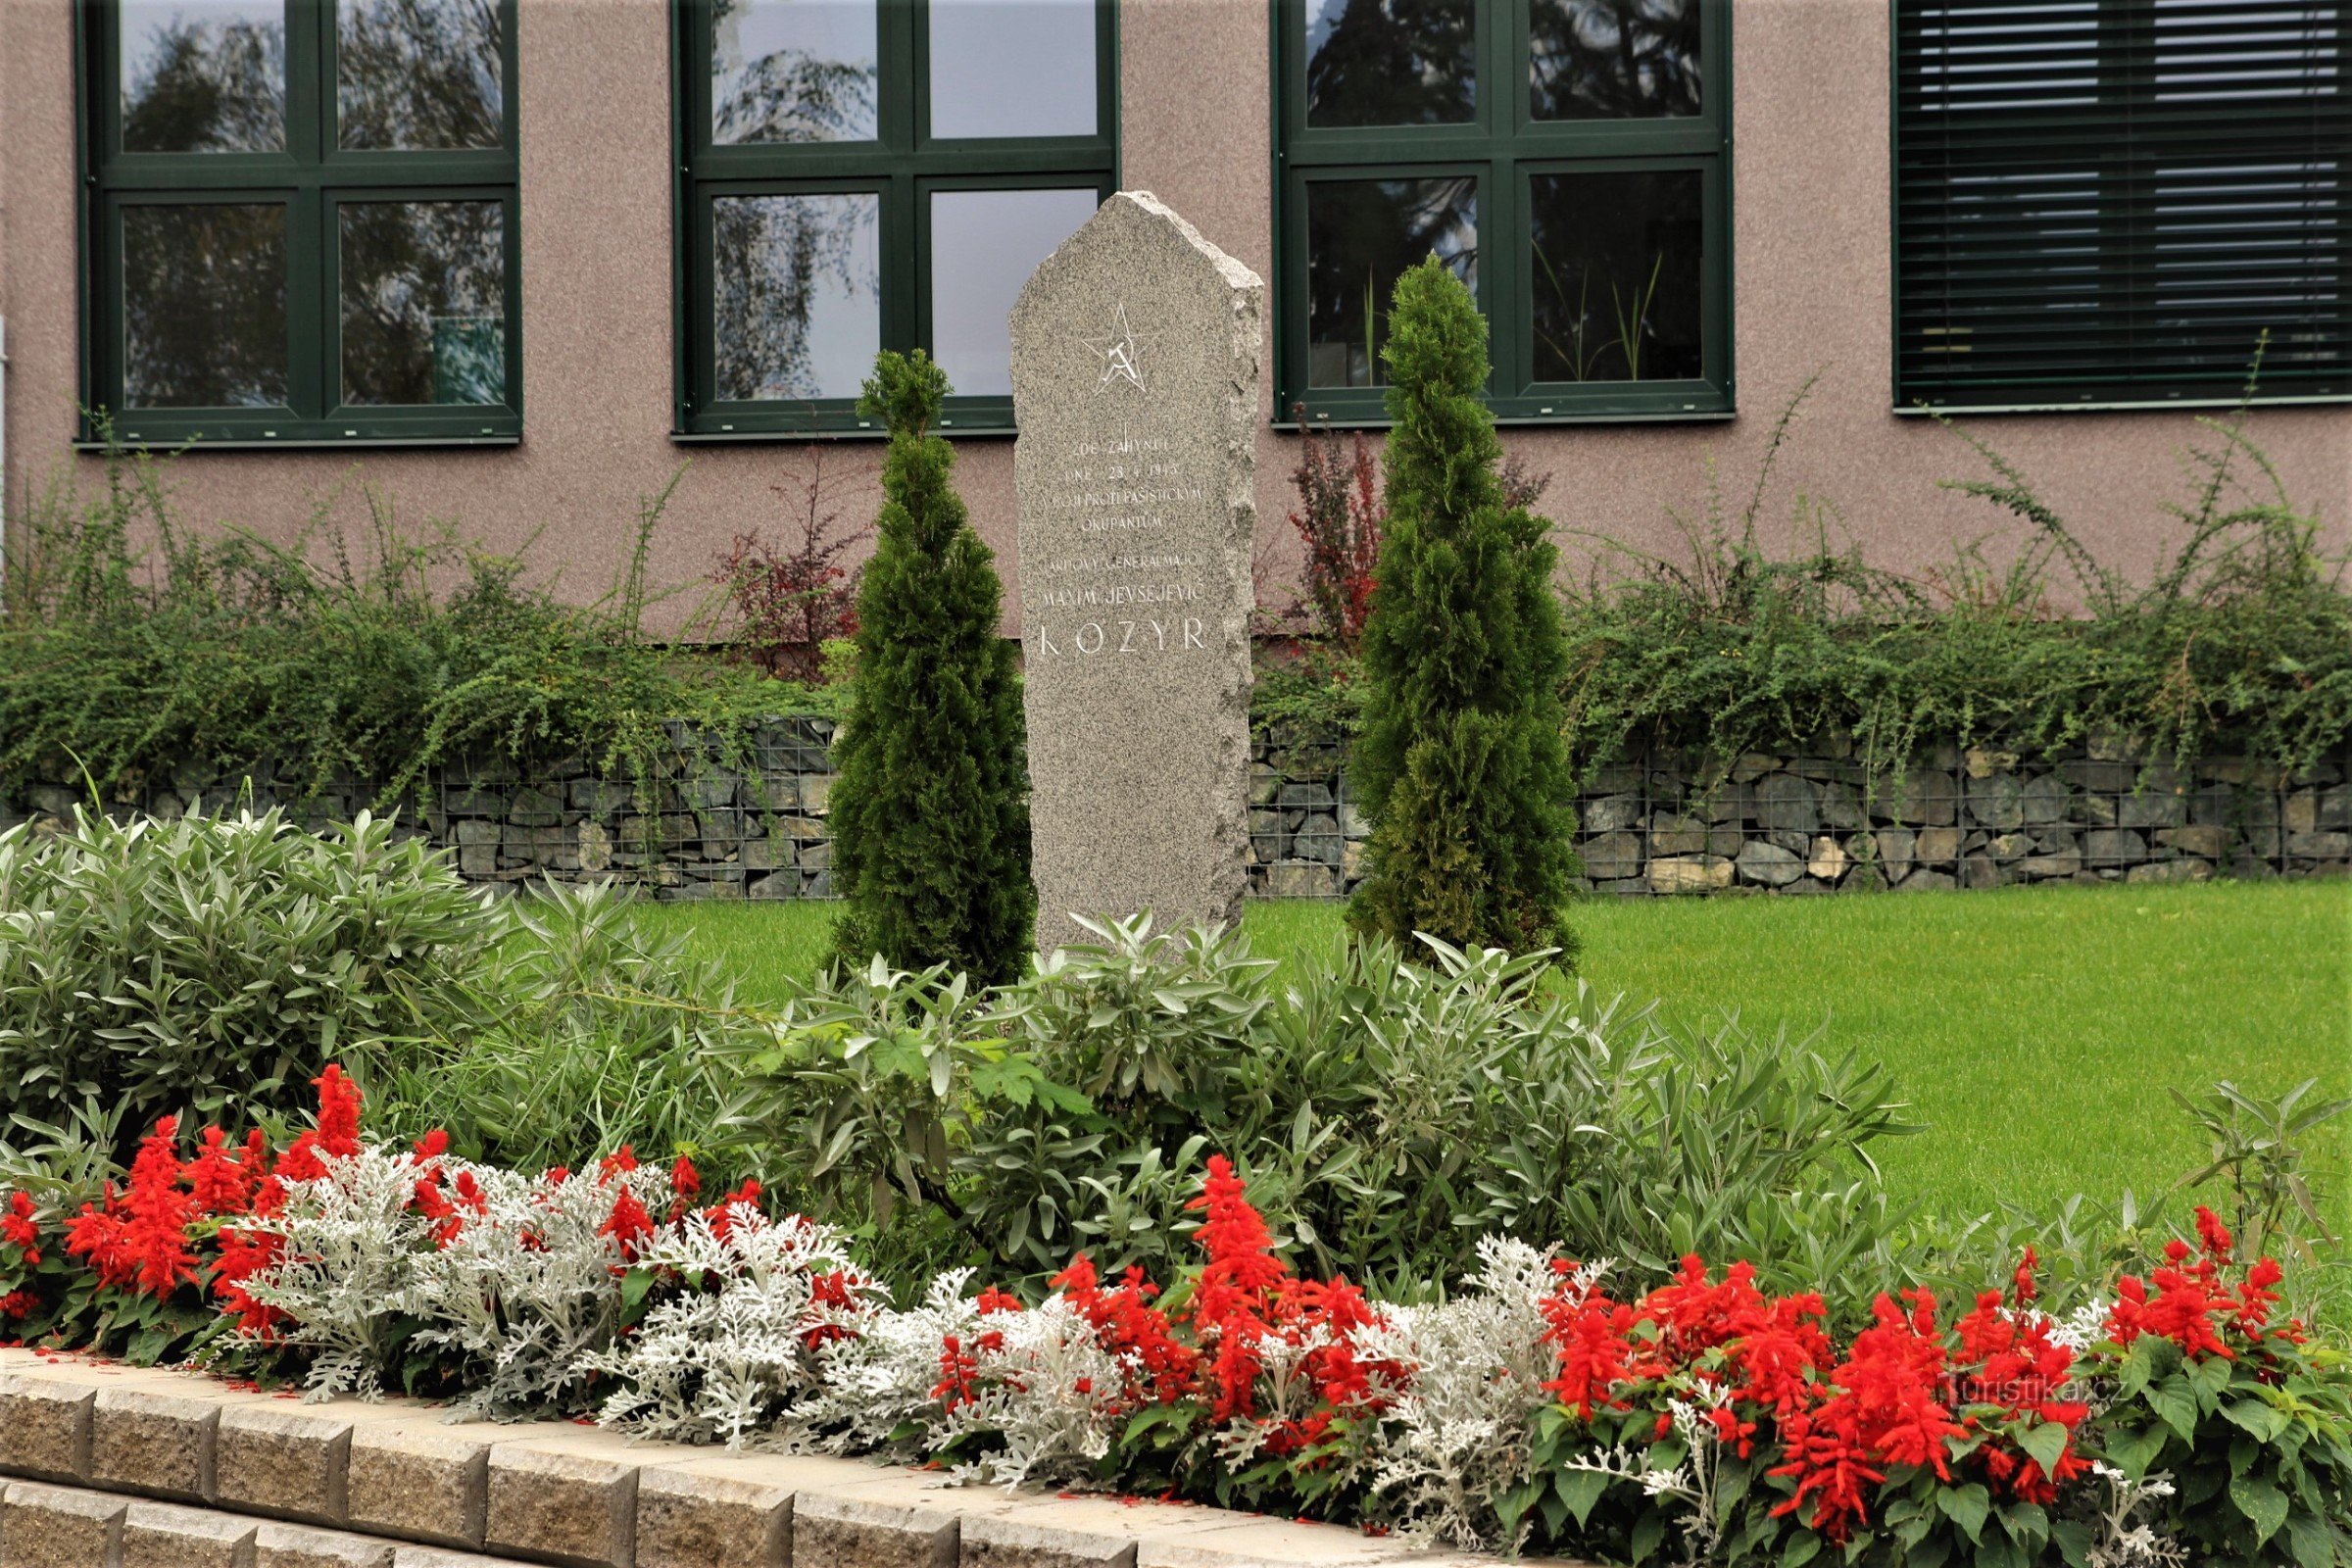 Monumento ao General Kozyr em frente ao edifício da Escola Secundária de Horticultura